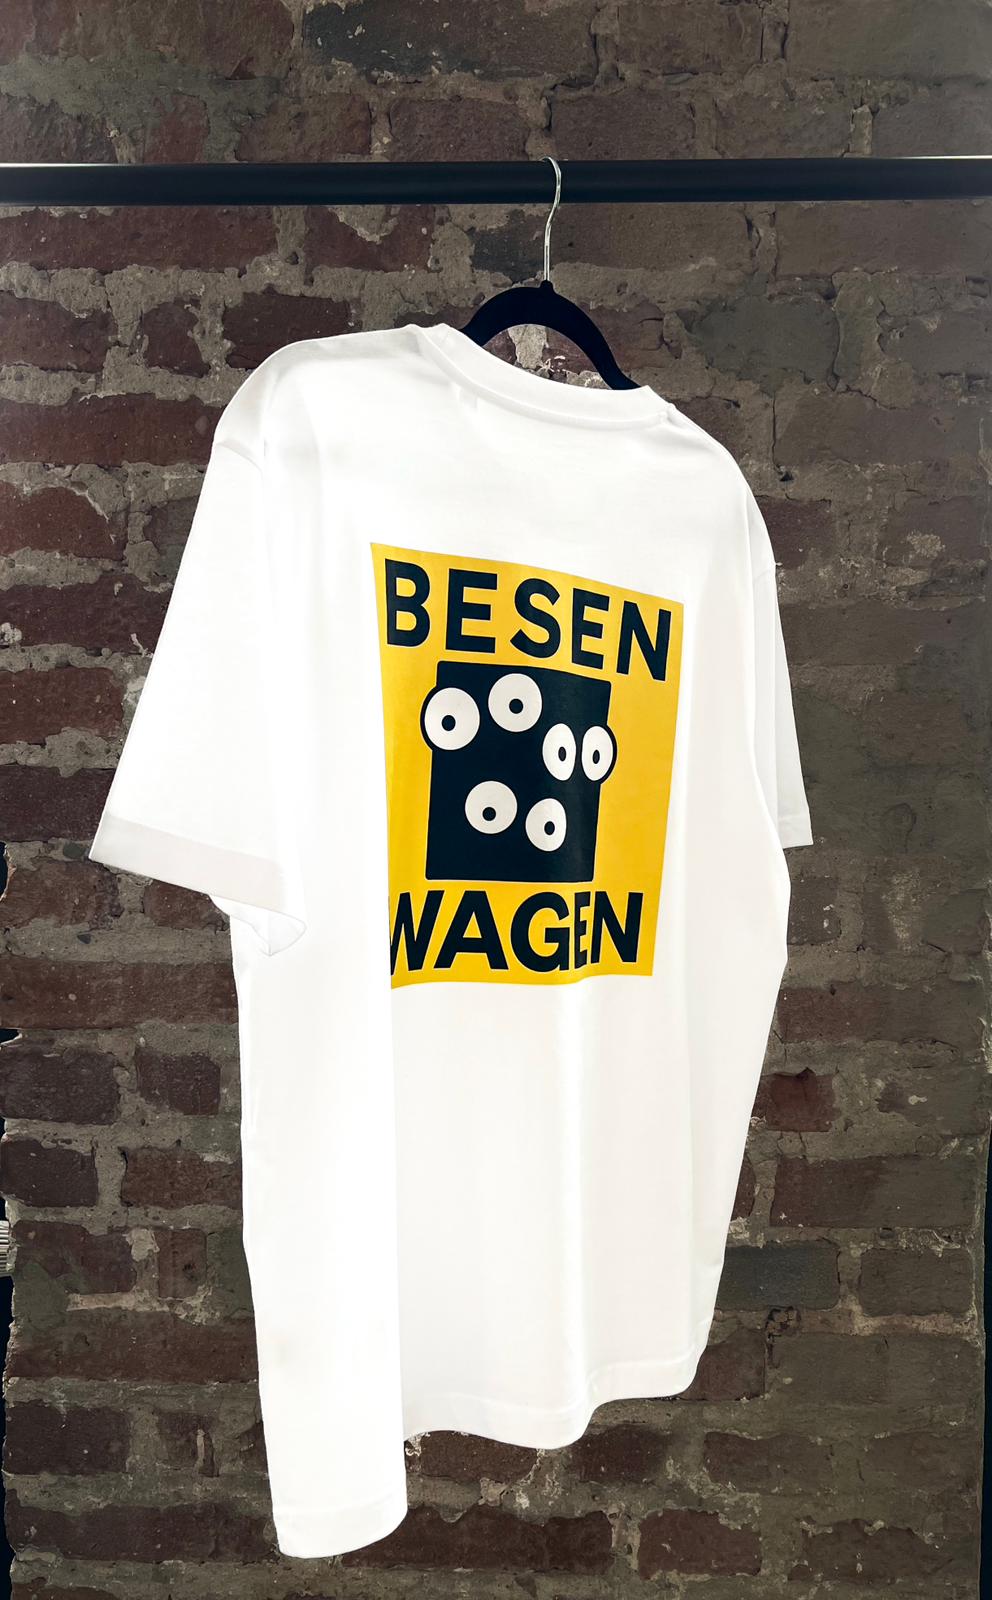 Besenwagen T-Shirt - M